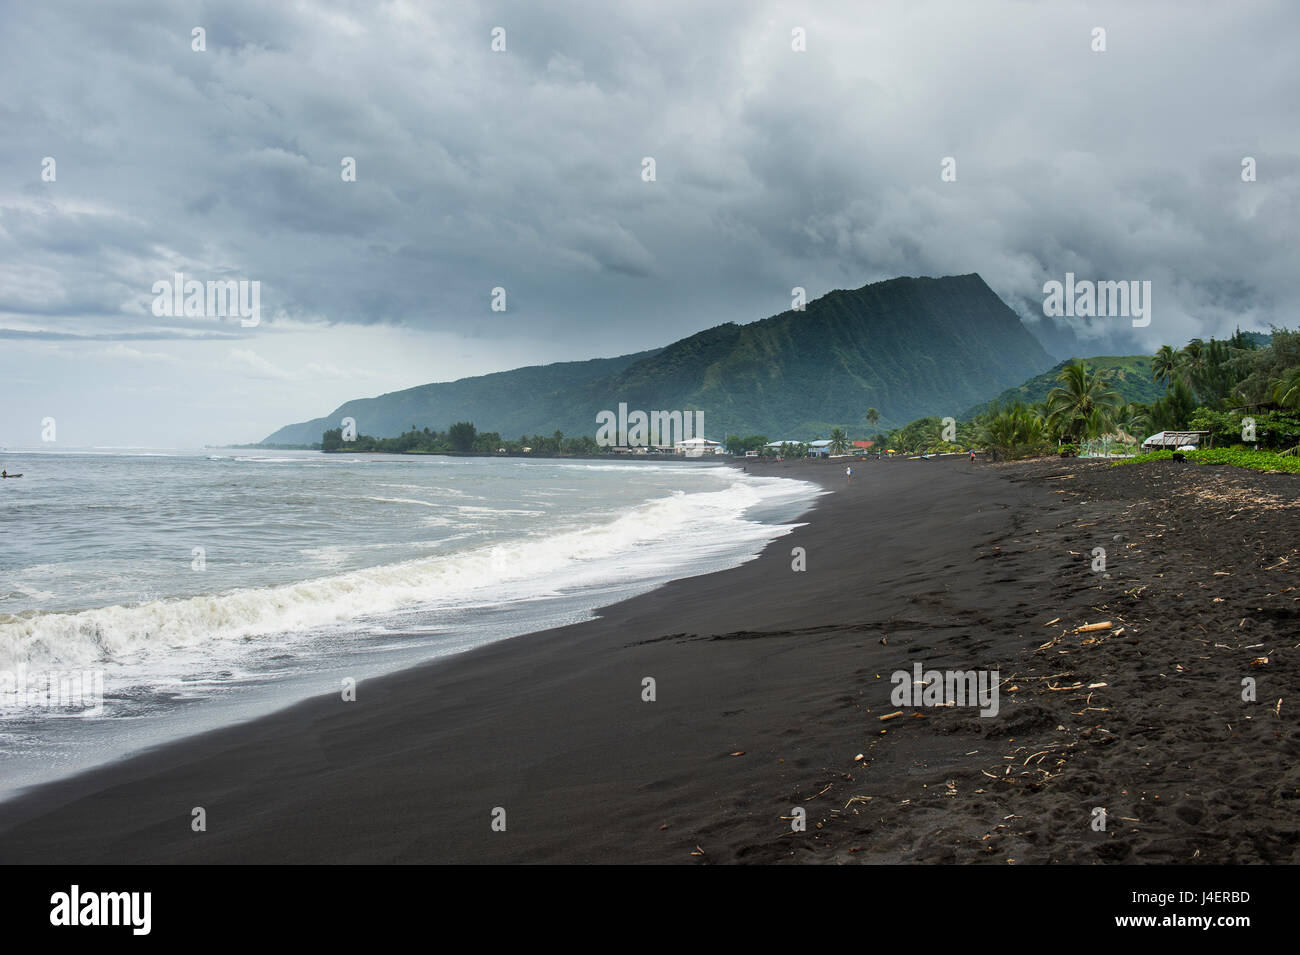 La playa de arena negra volcánica, Tahití Taharuu, Islas Sociedad, Polinesia Francesa, el Pacífico Foto de stock